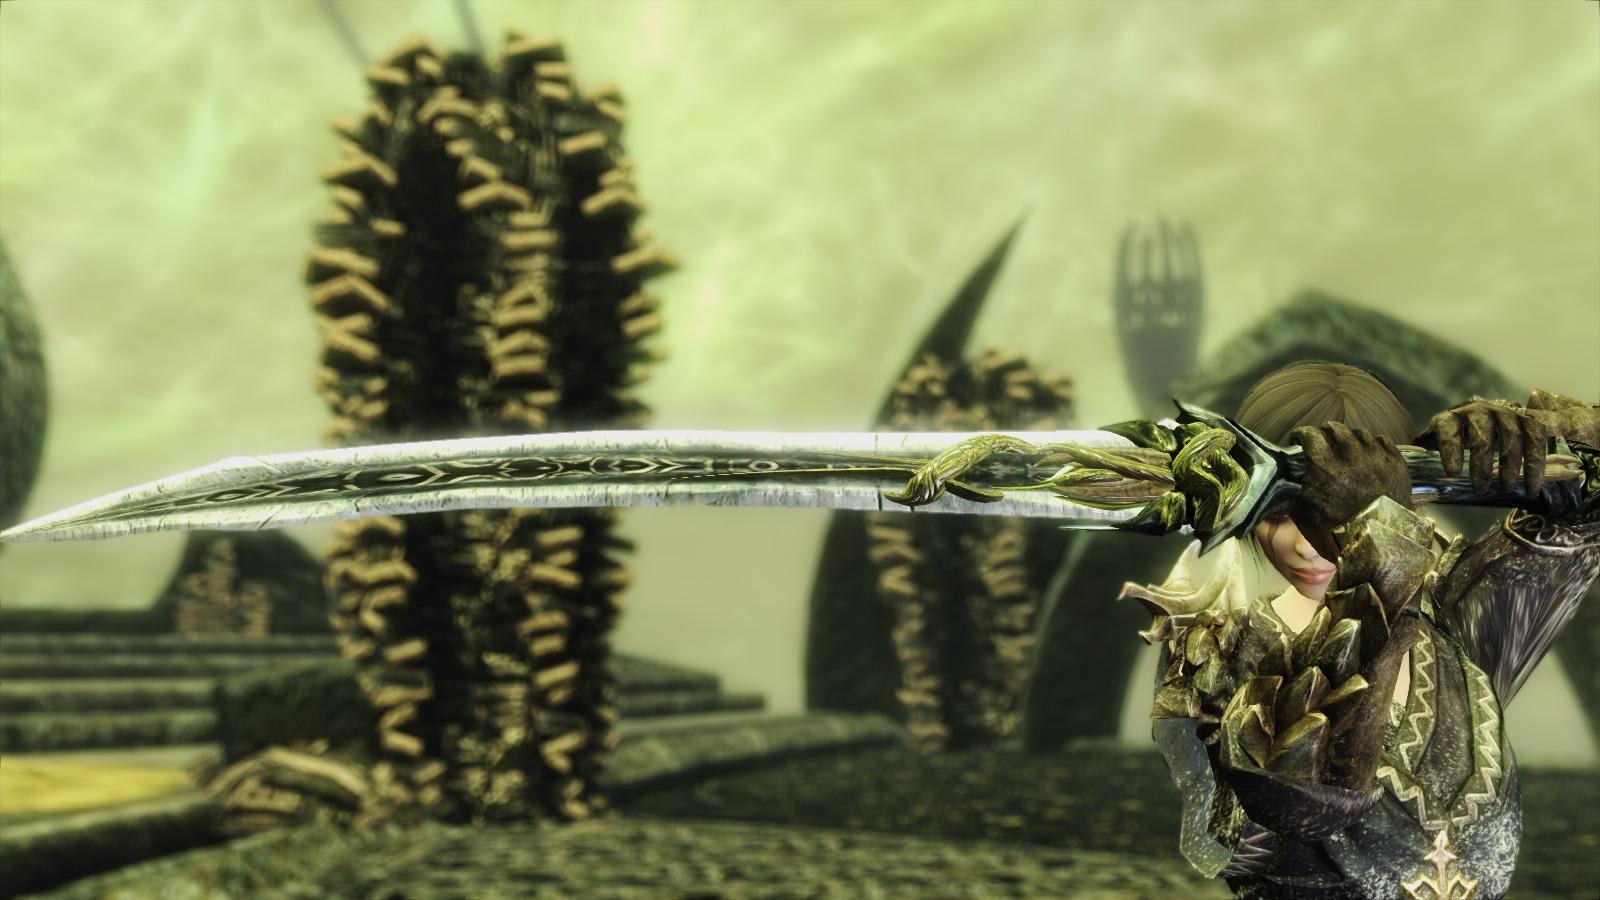 Aevrigheim - Miraak's Sword and Staff Replacer. ☆. 武 器. 